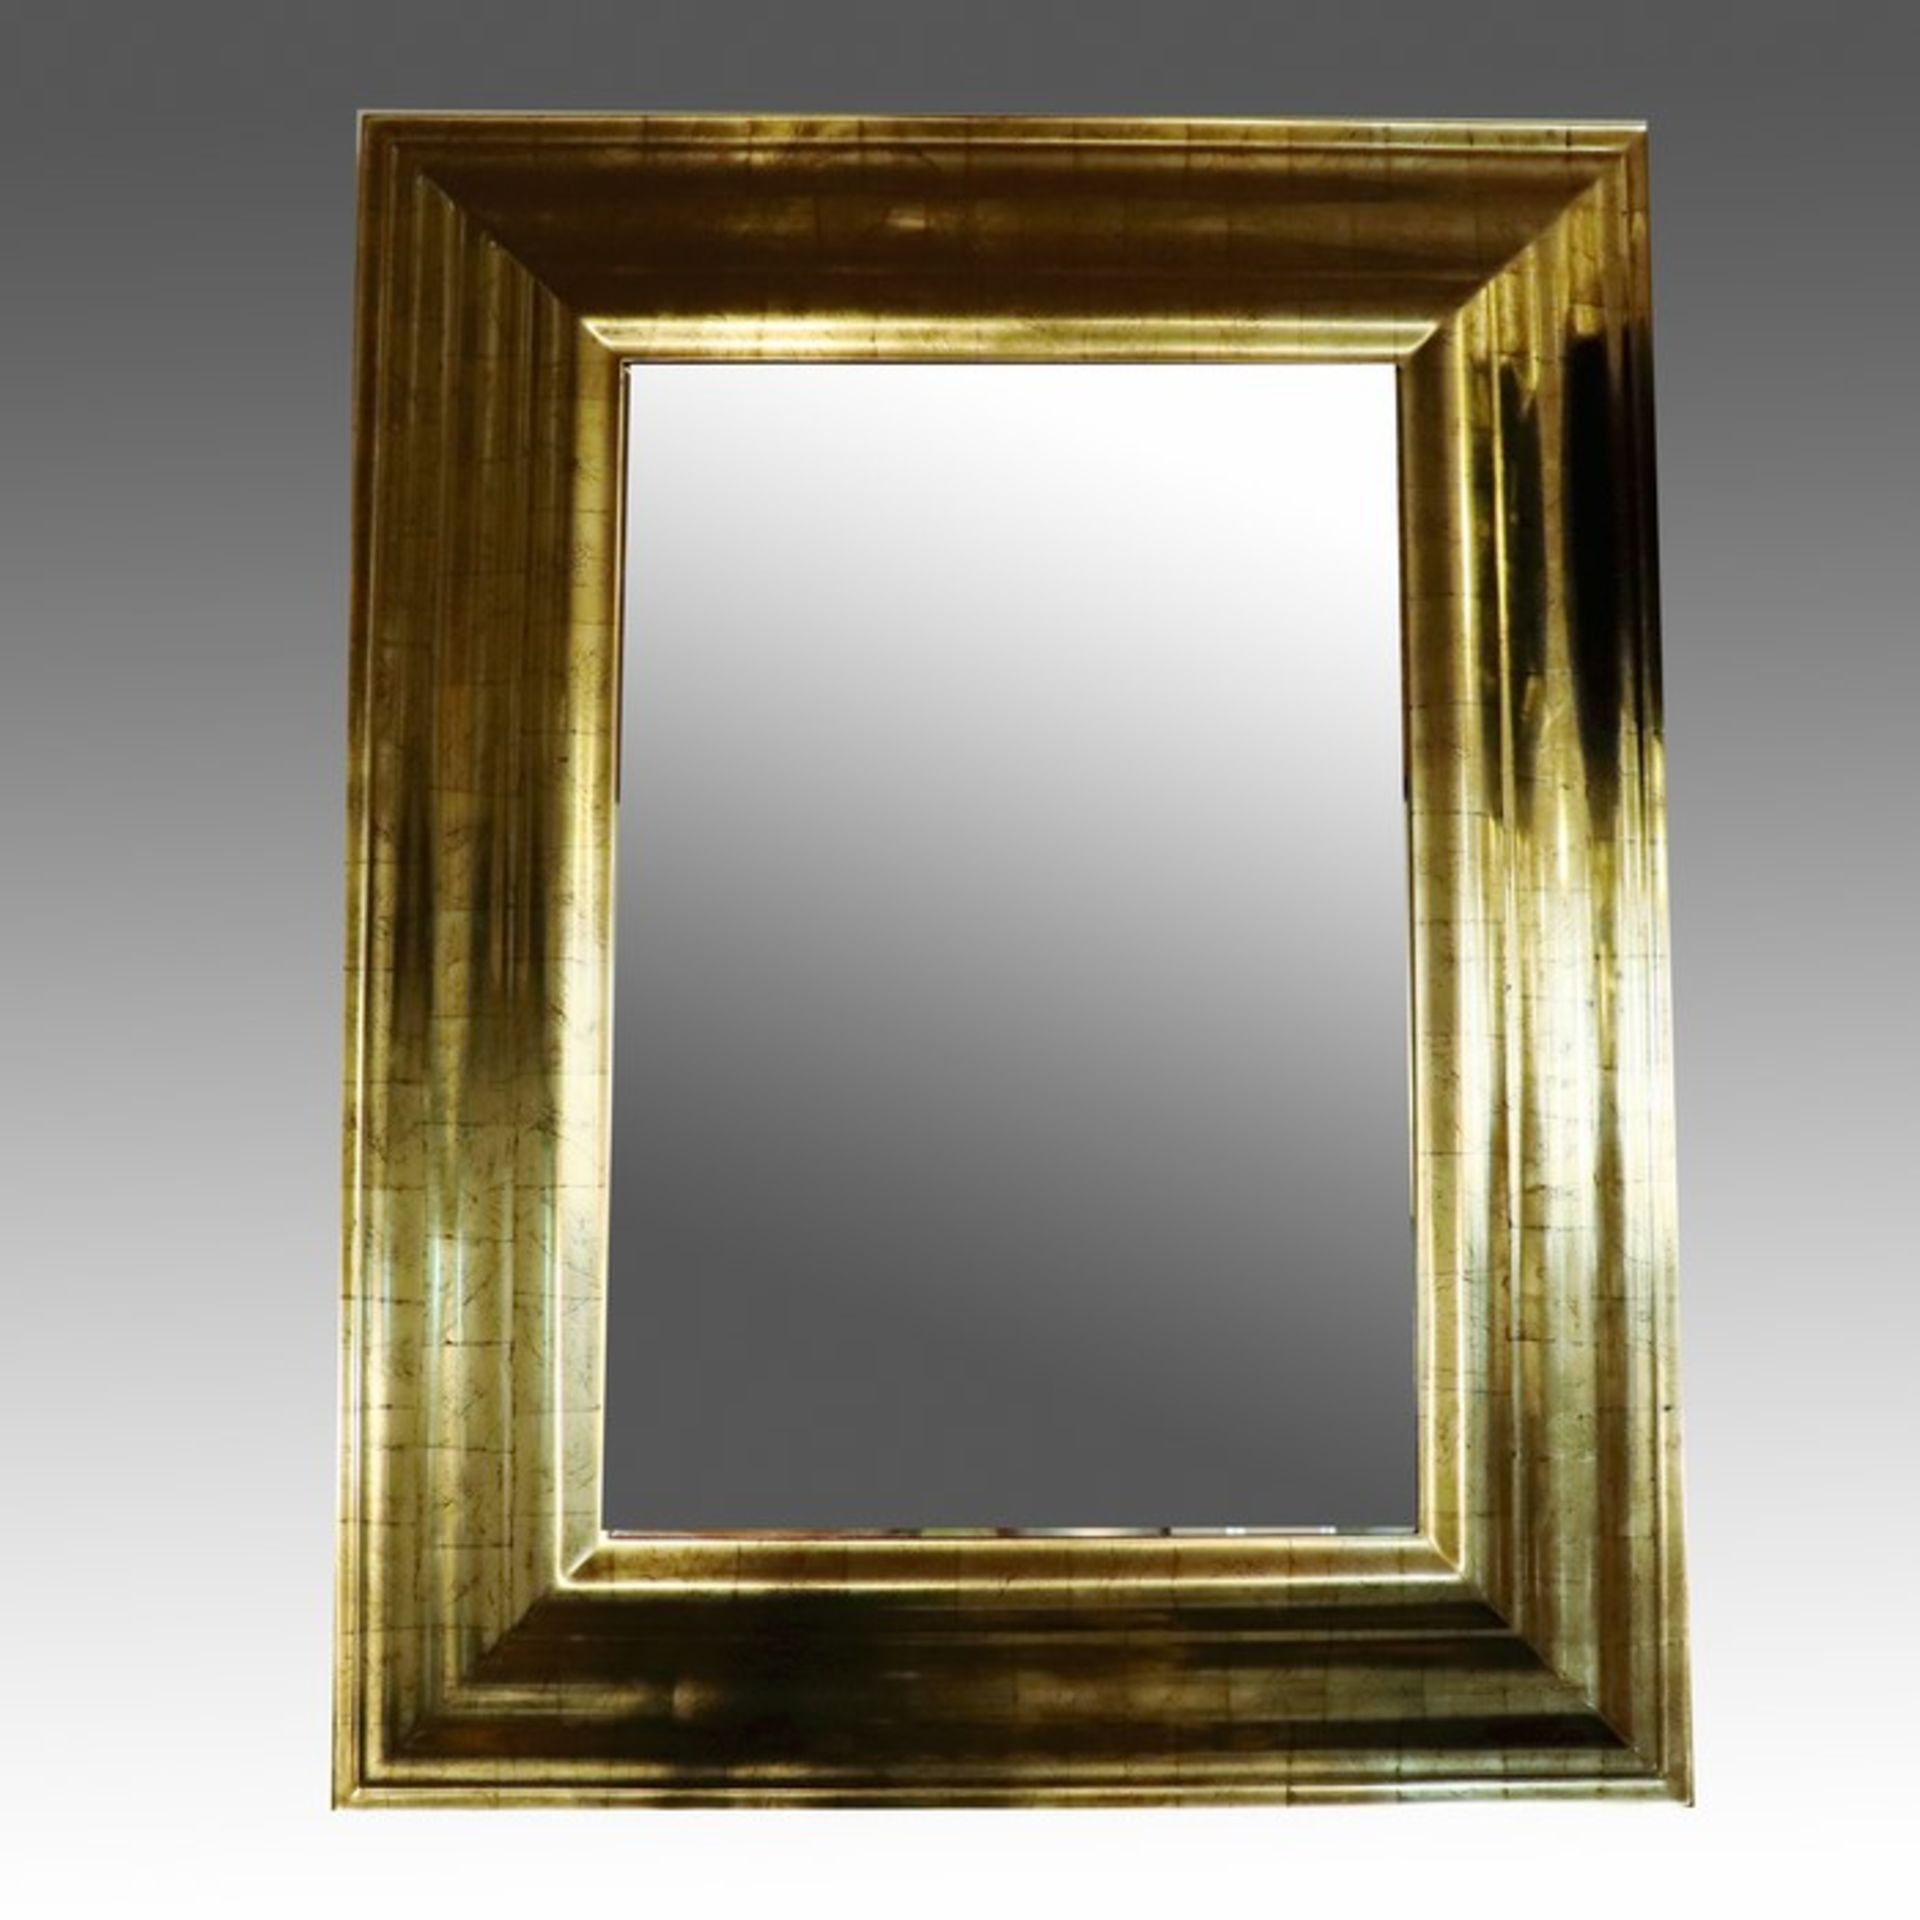 SpiegelHolz/Metall, vergoldet, rechteckige Form, Rahmung, mehrfach abgetreppt, gerundet, Spiegel